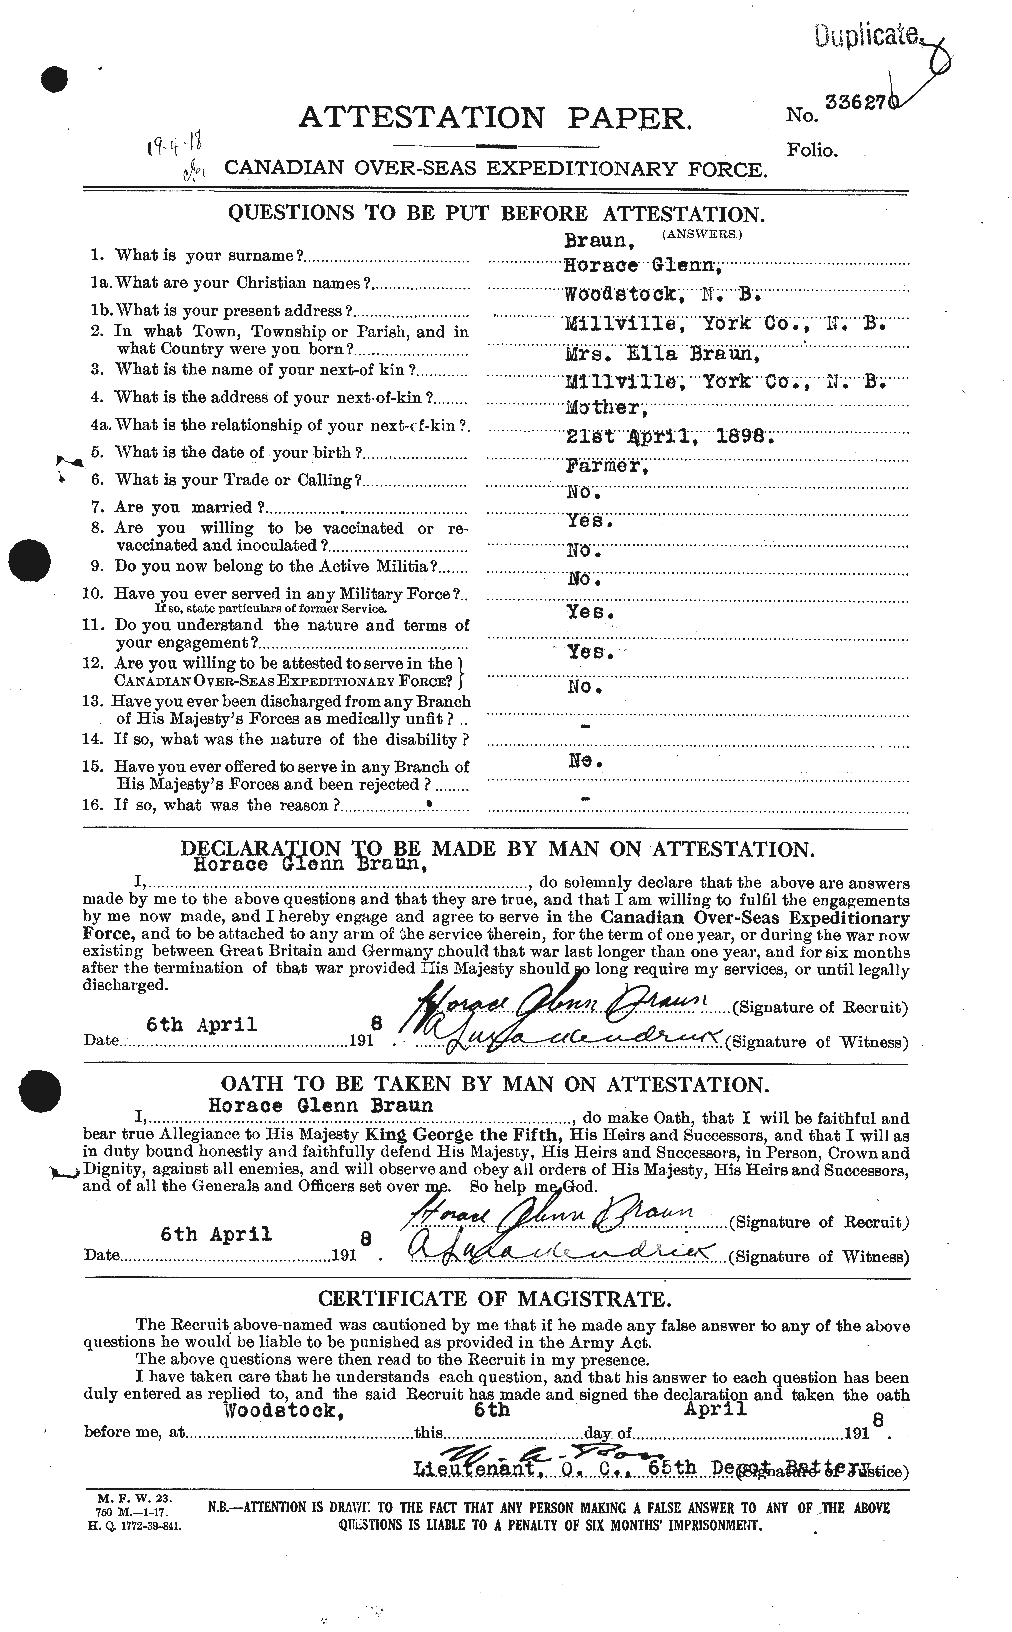 Dossiers du Personnel de la Première Guerre mondiale - CEC 260624a